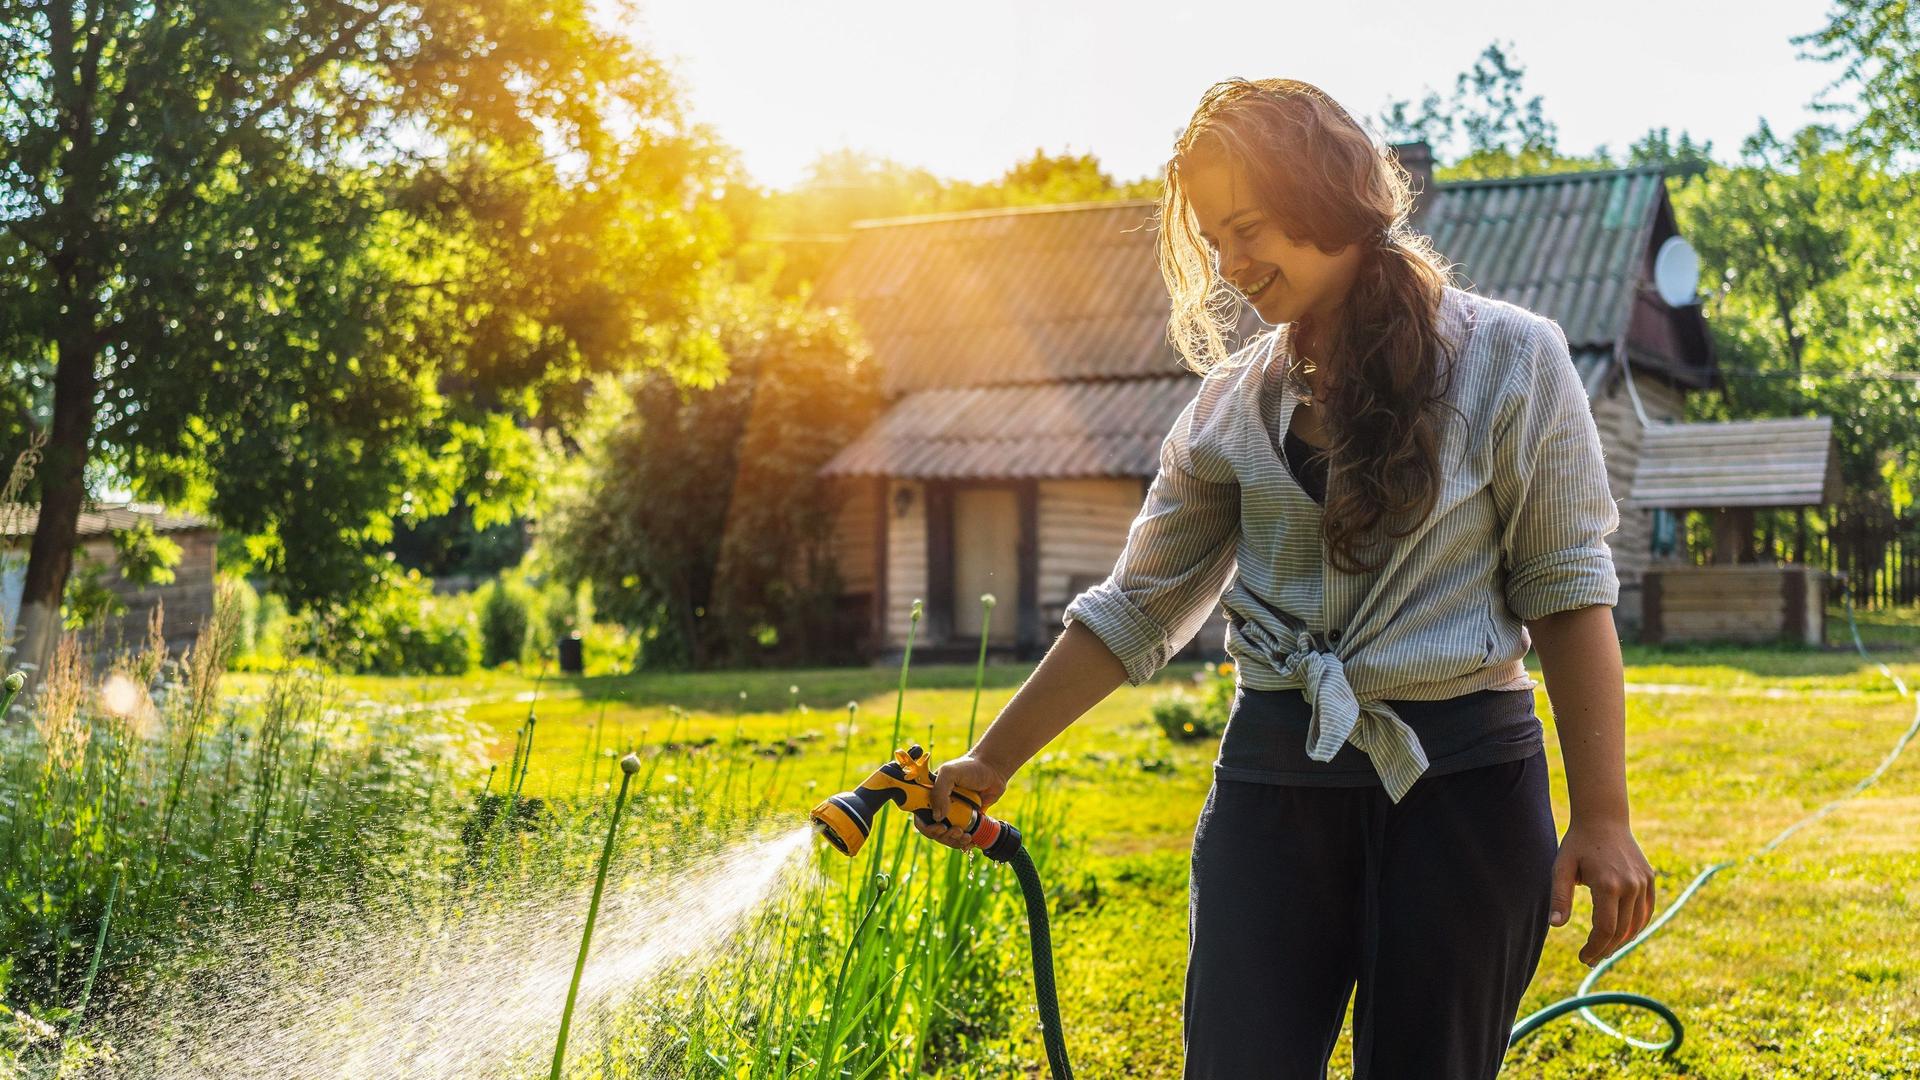 Junge Frau bewässert mit einem Gartenschlauch Pflanzen im Garten. Im Hintergrund steht ein Landhaus.